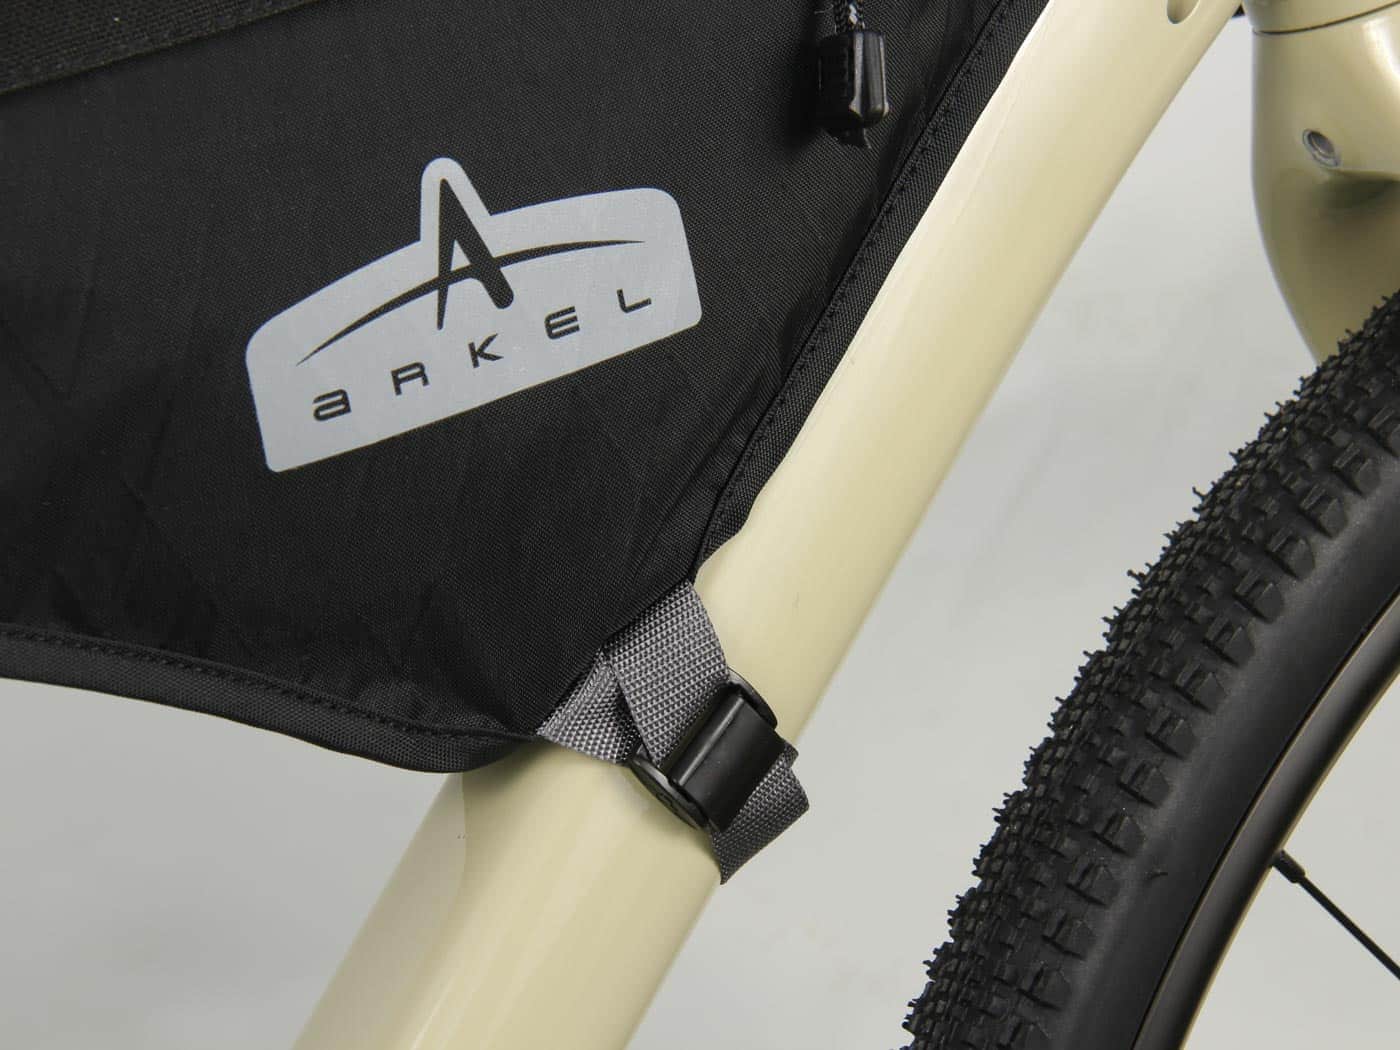 Frame Bags - 100% waterproof